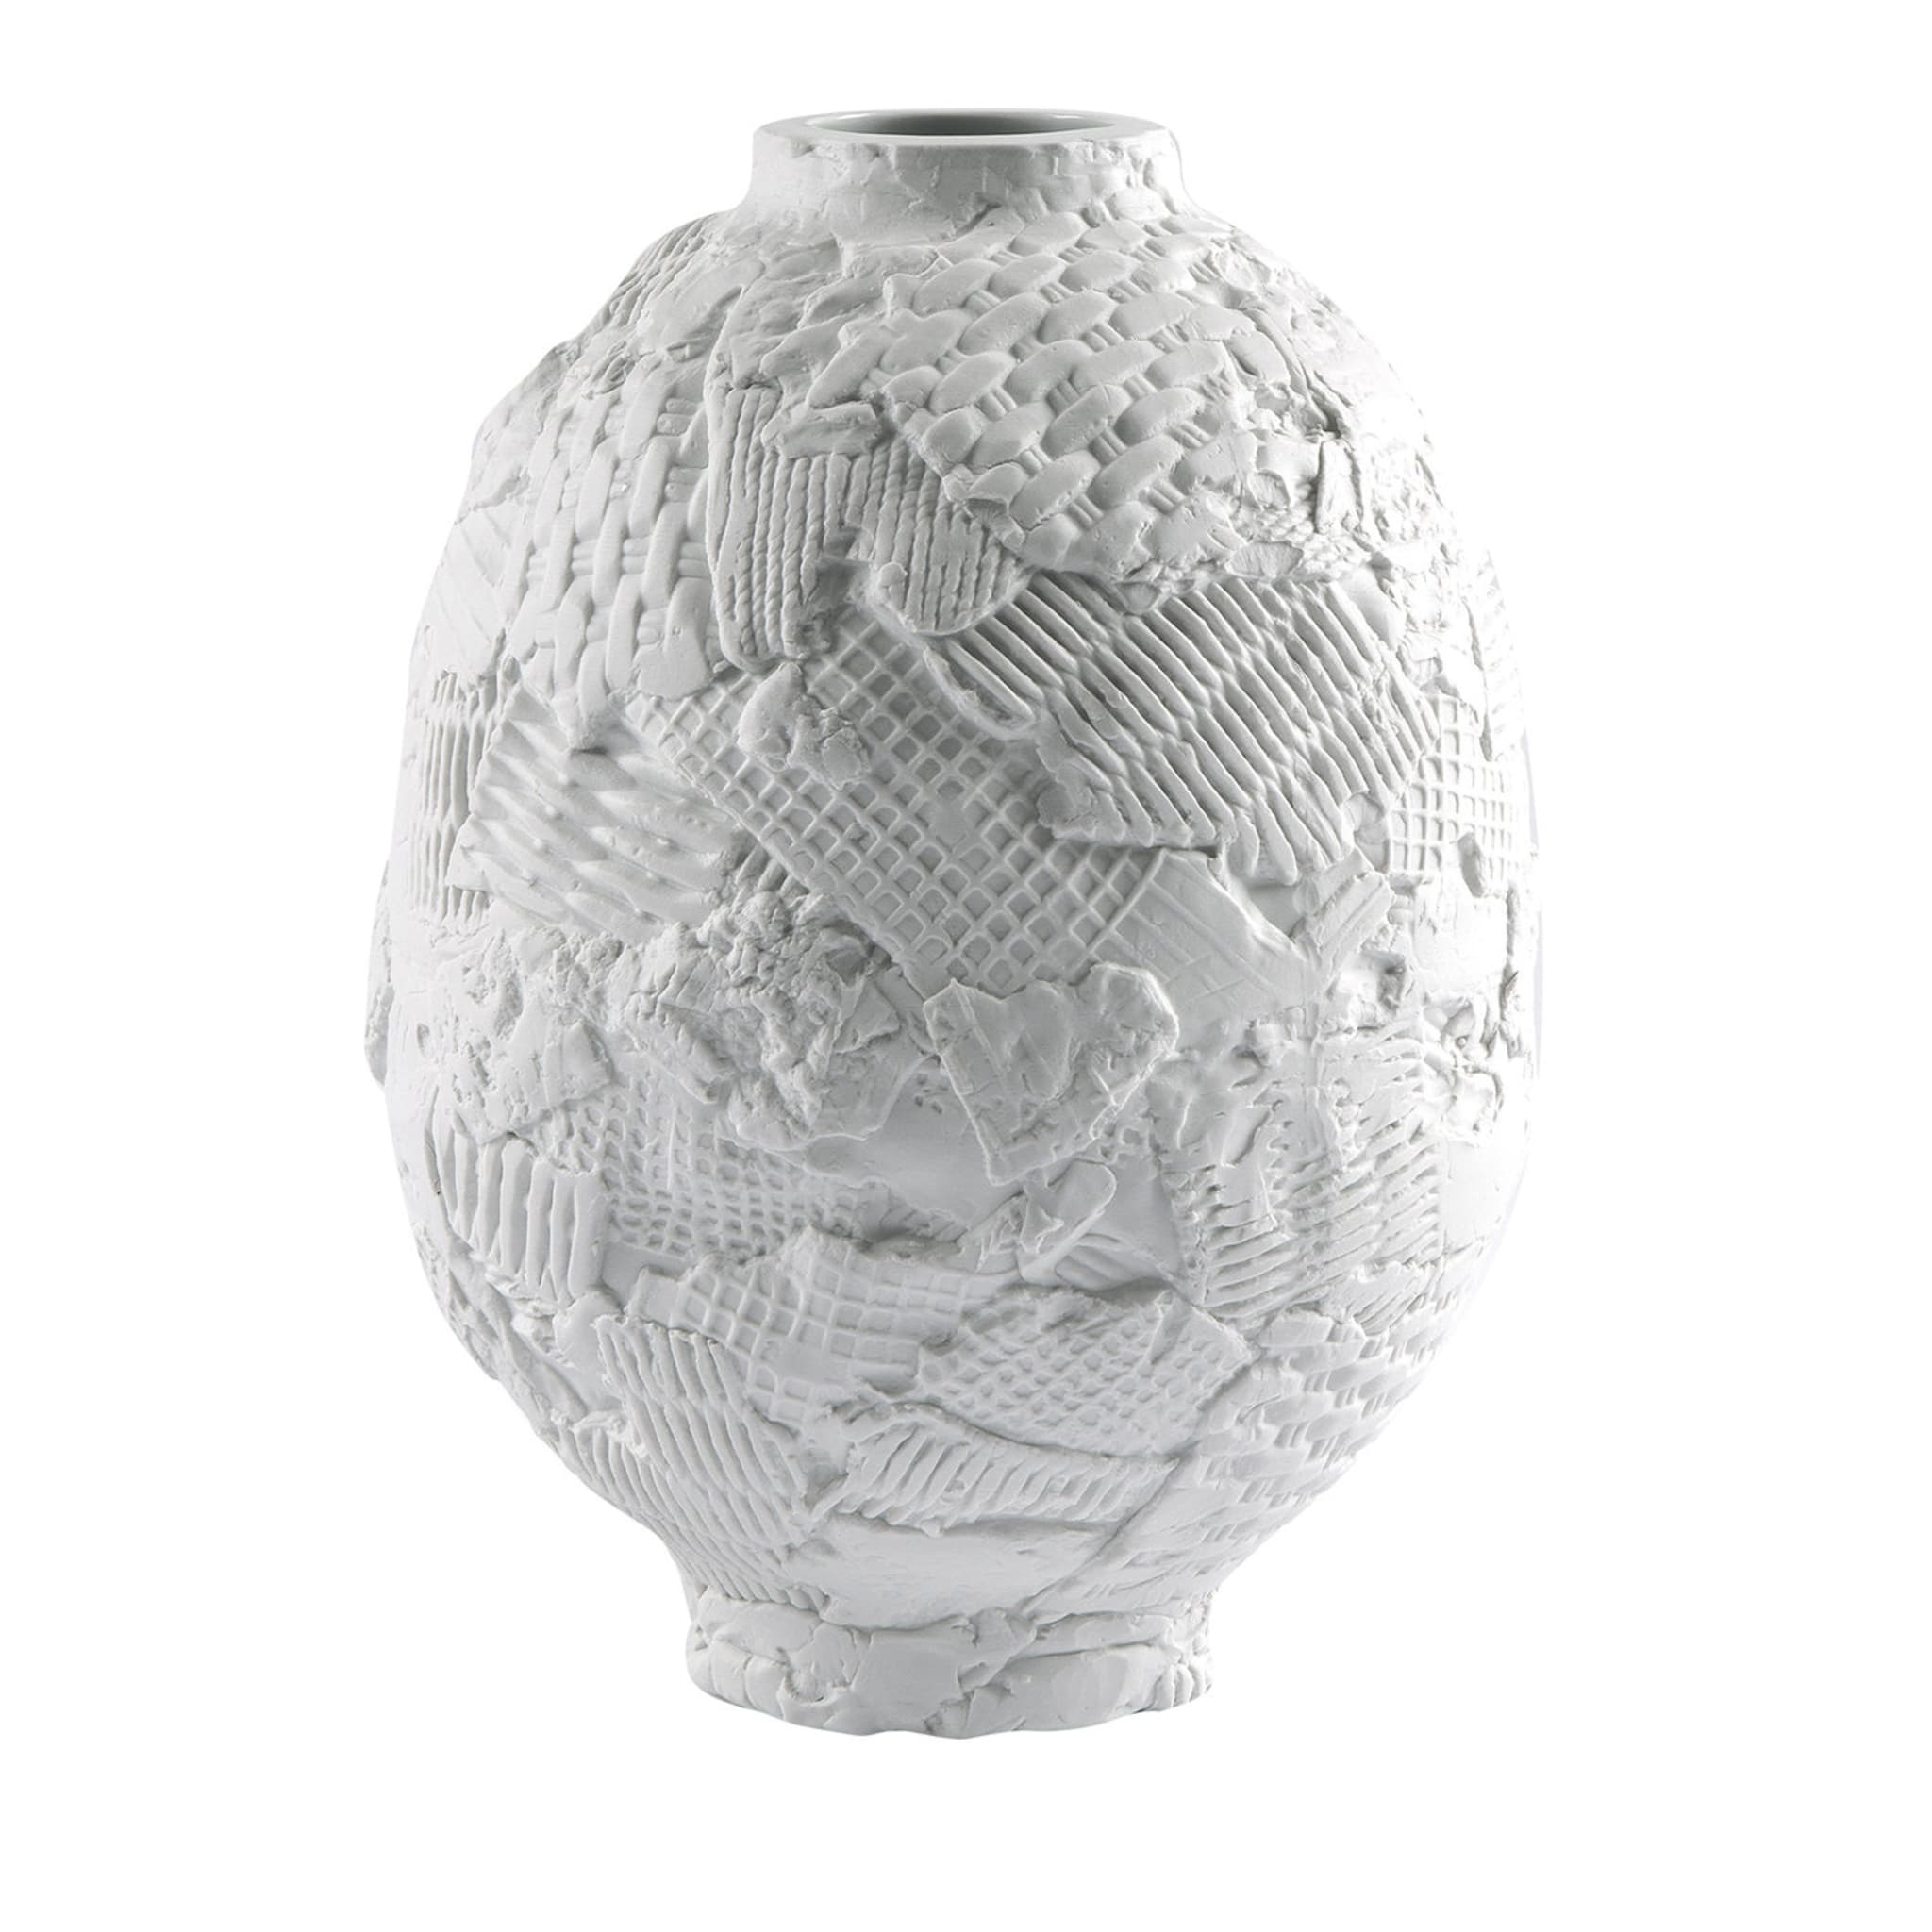 Esker-Vase von Pol Polloniato - Hauptansicht